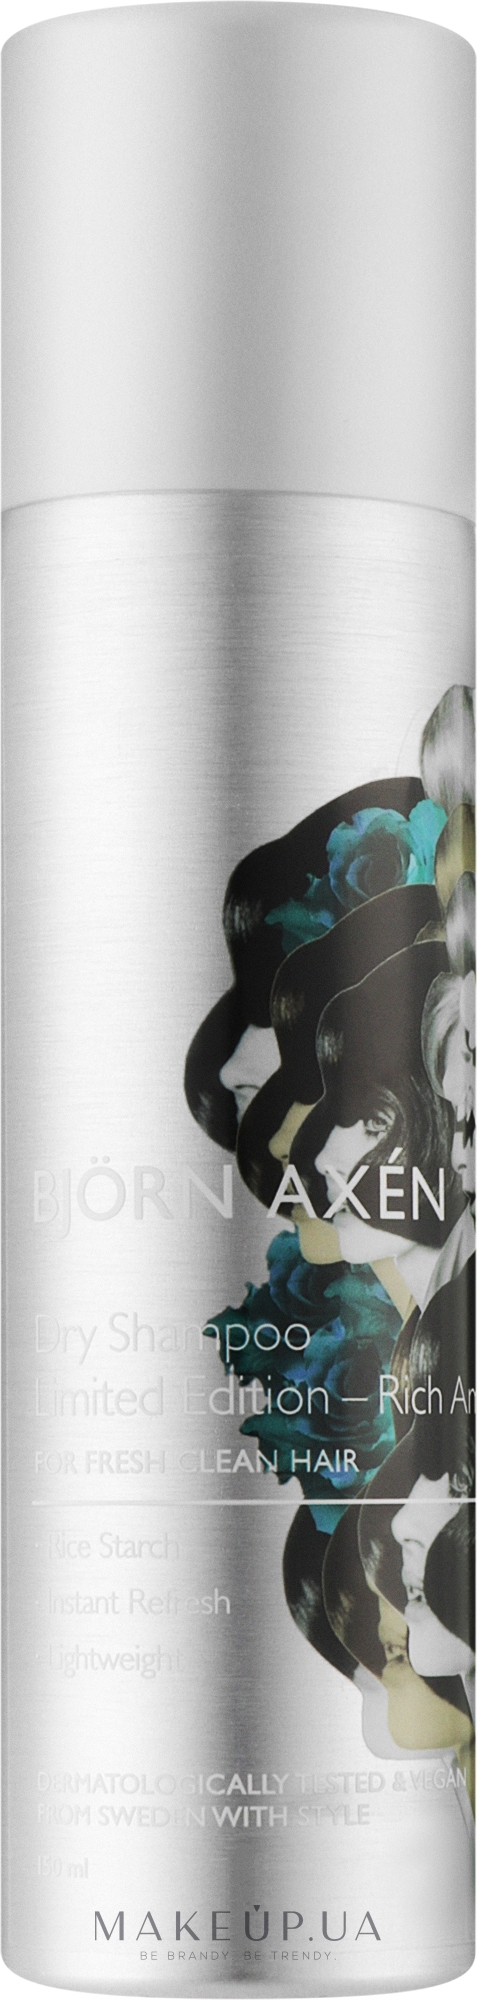 Сухой шампунь для волос - Bjorn Axen Dry Shampoo Rich Amber — фото 150ml